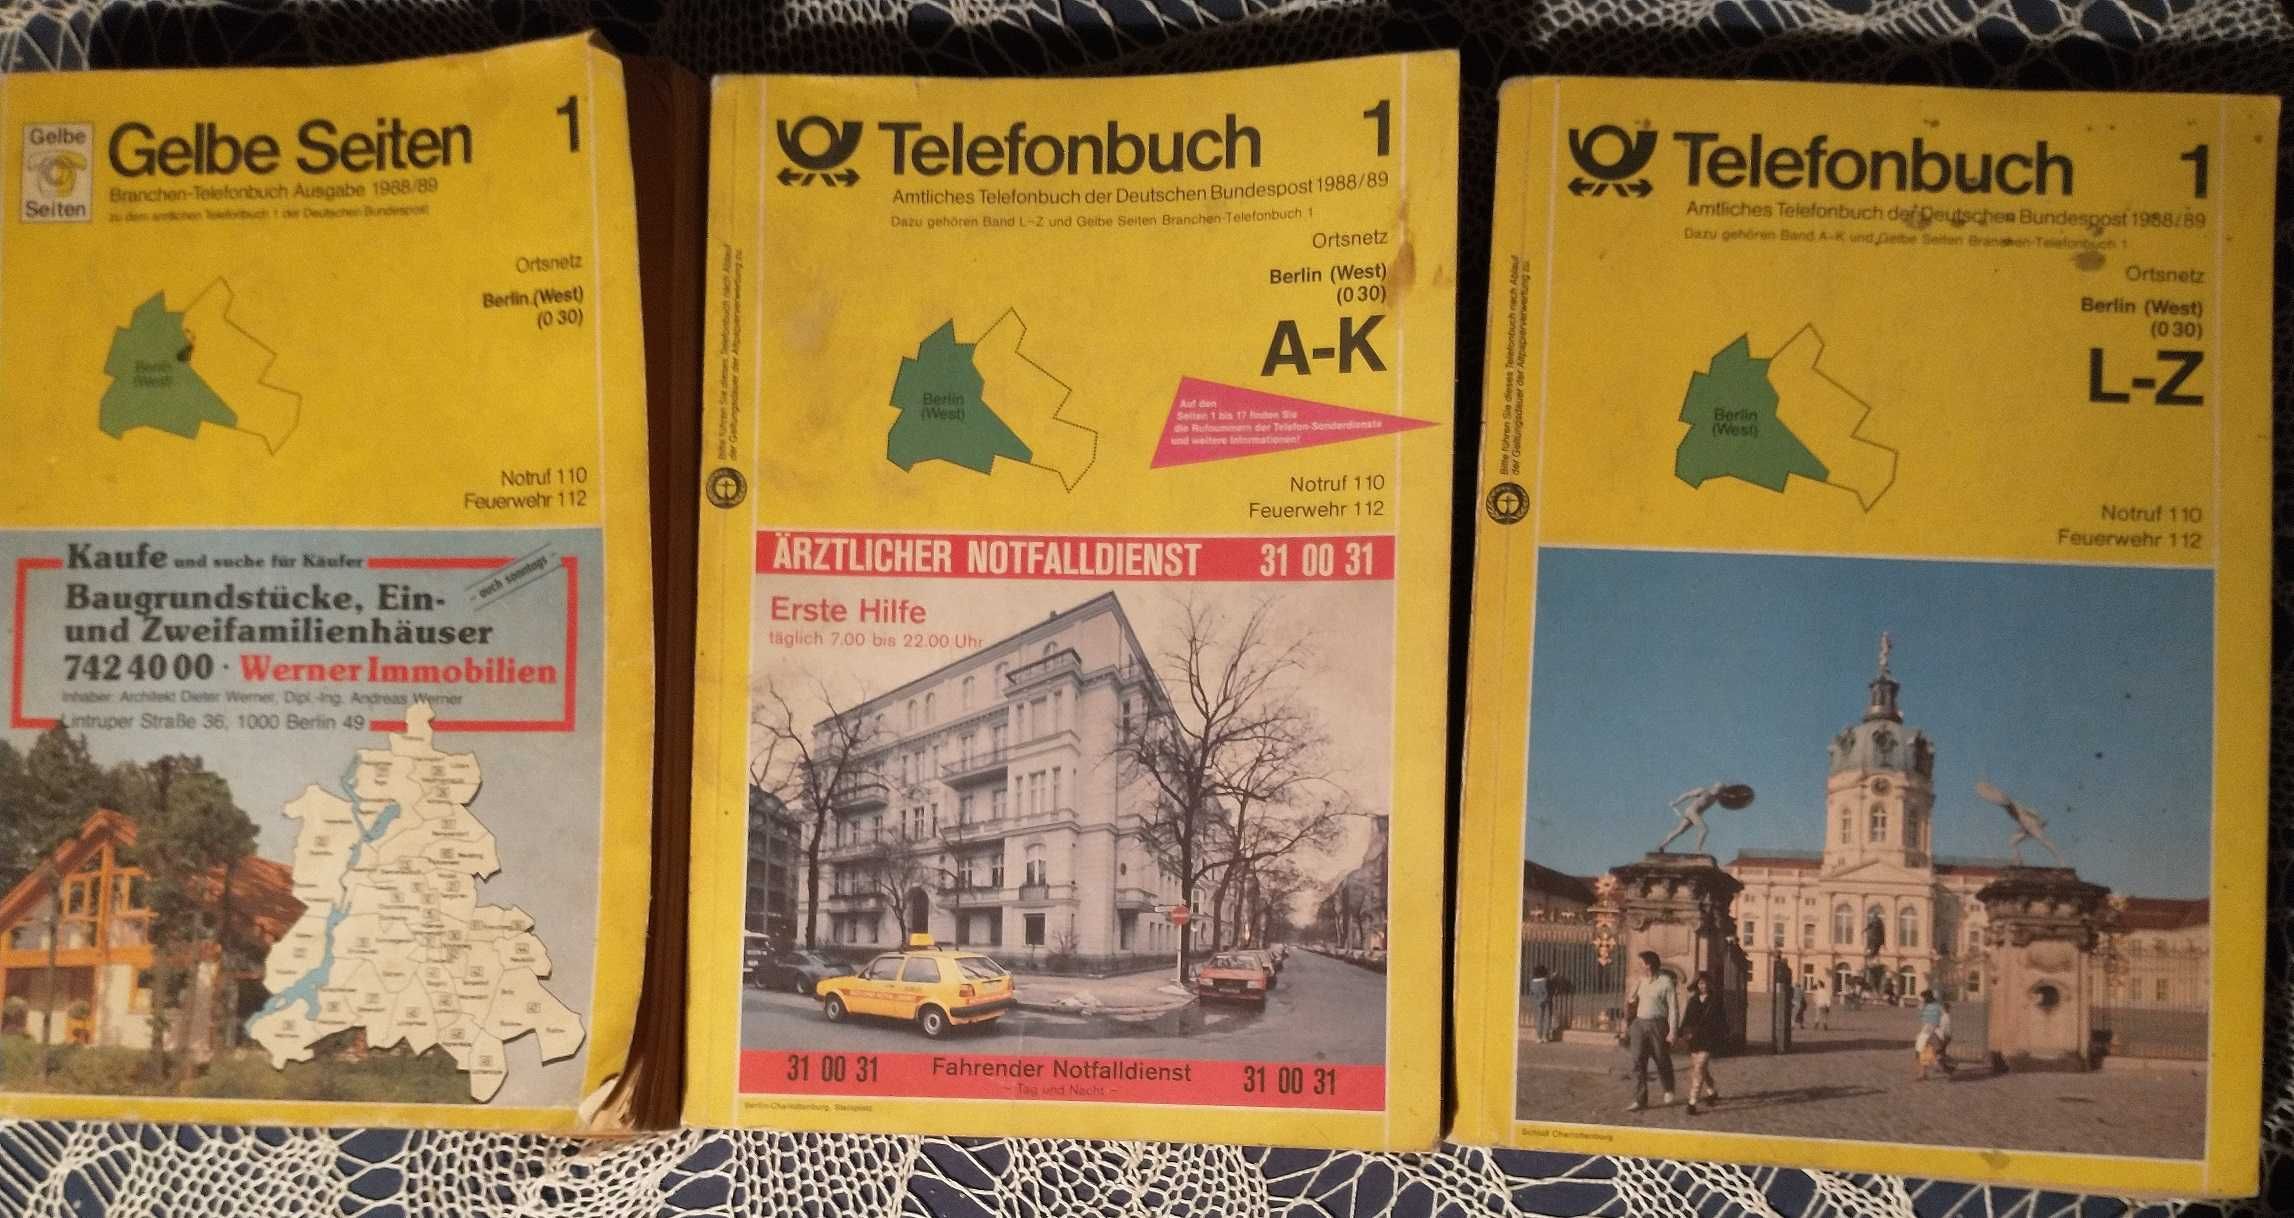 Książka telefoniczna Berlin 1988 - 89 3 tomy